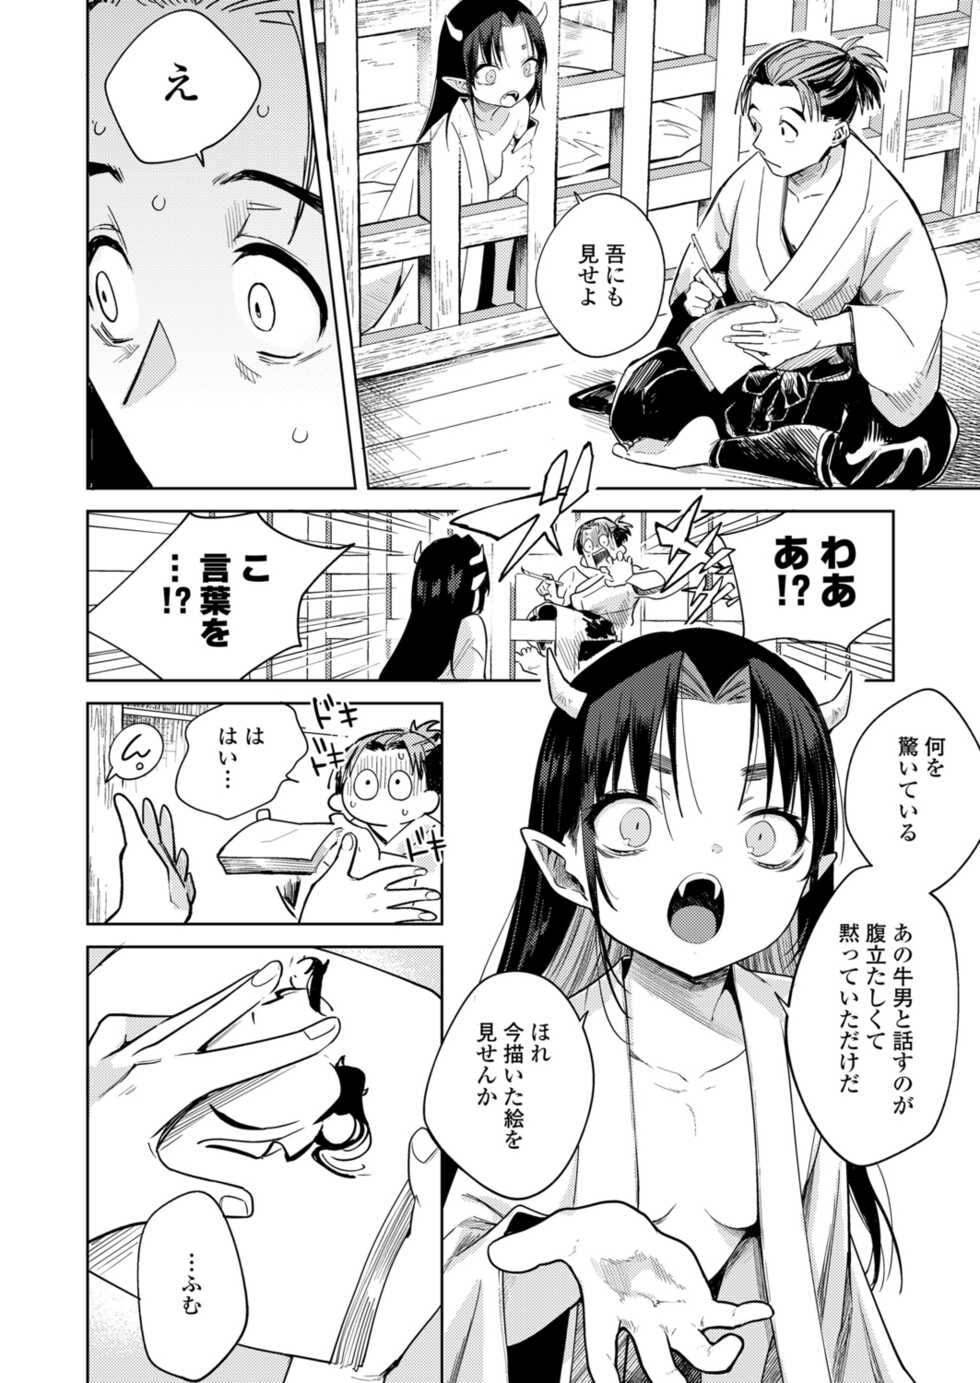 Towako 12 [Digital] - Page 16